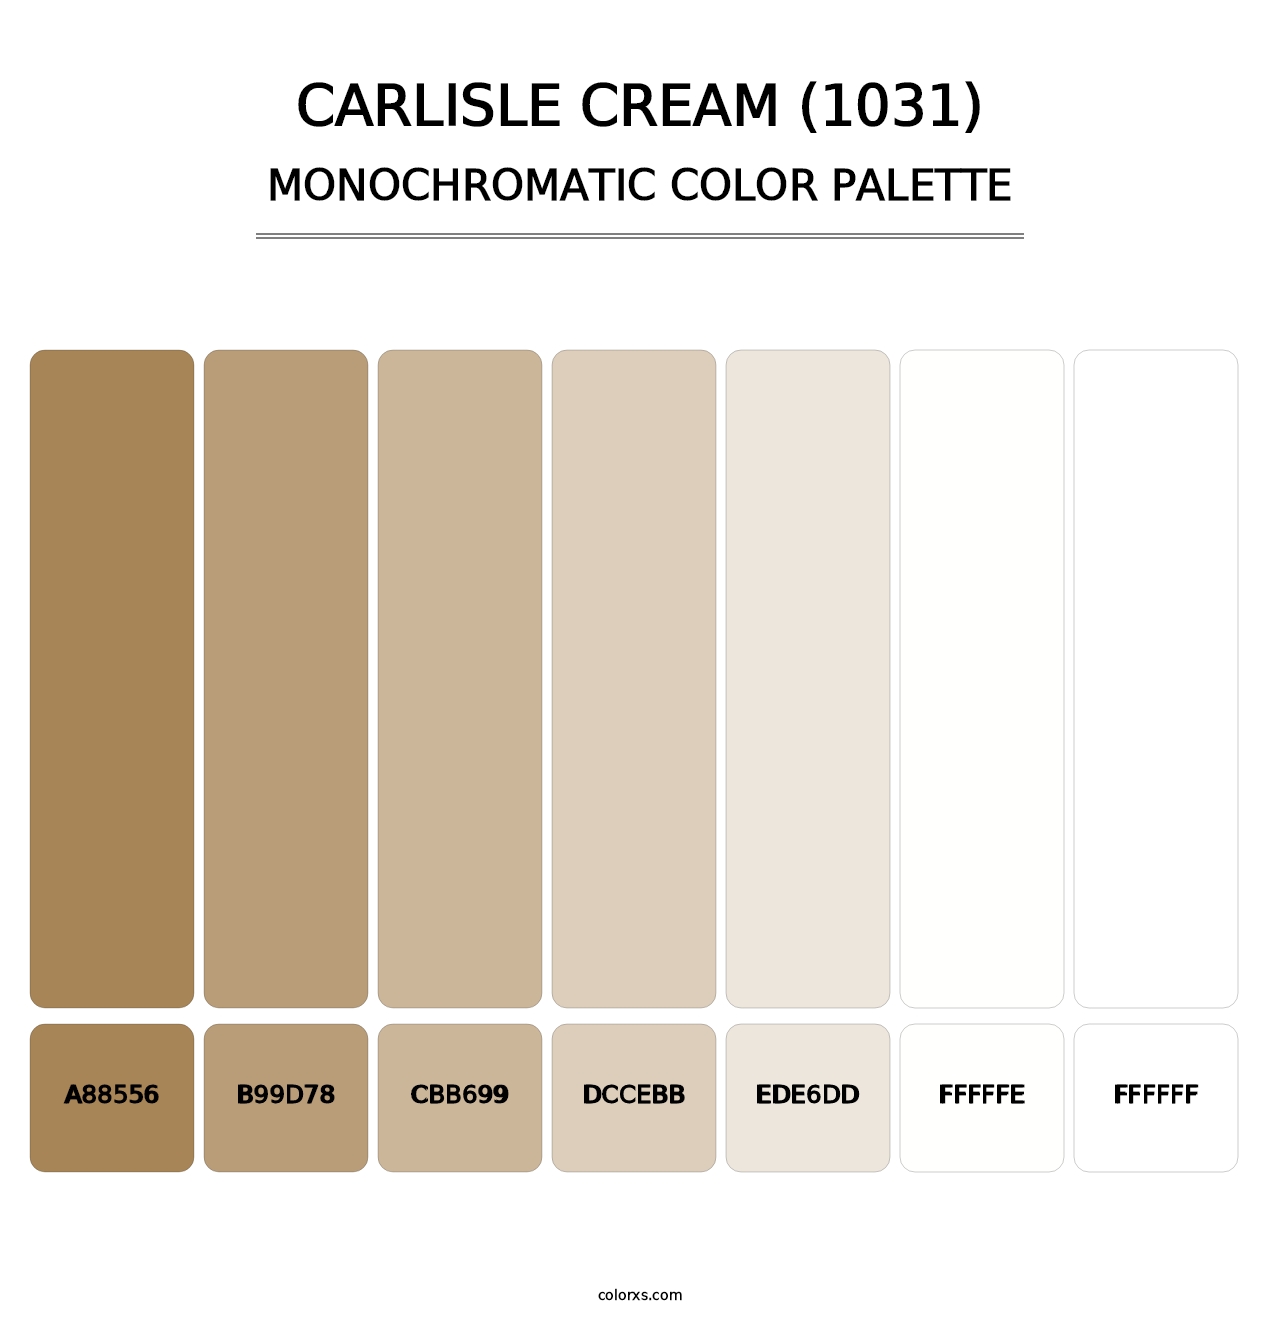 Carlisle Cream (1031) - Monochromatic Color Palette